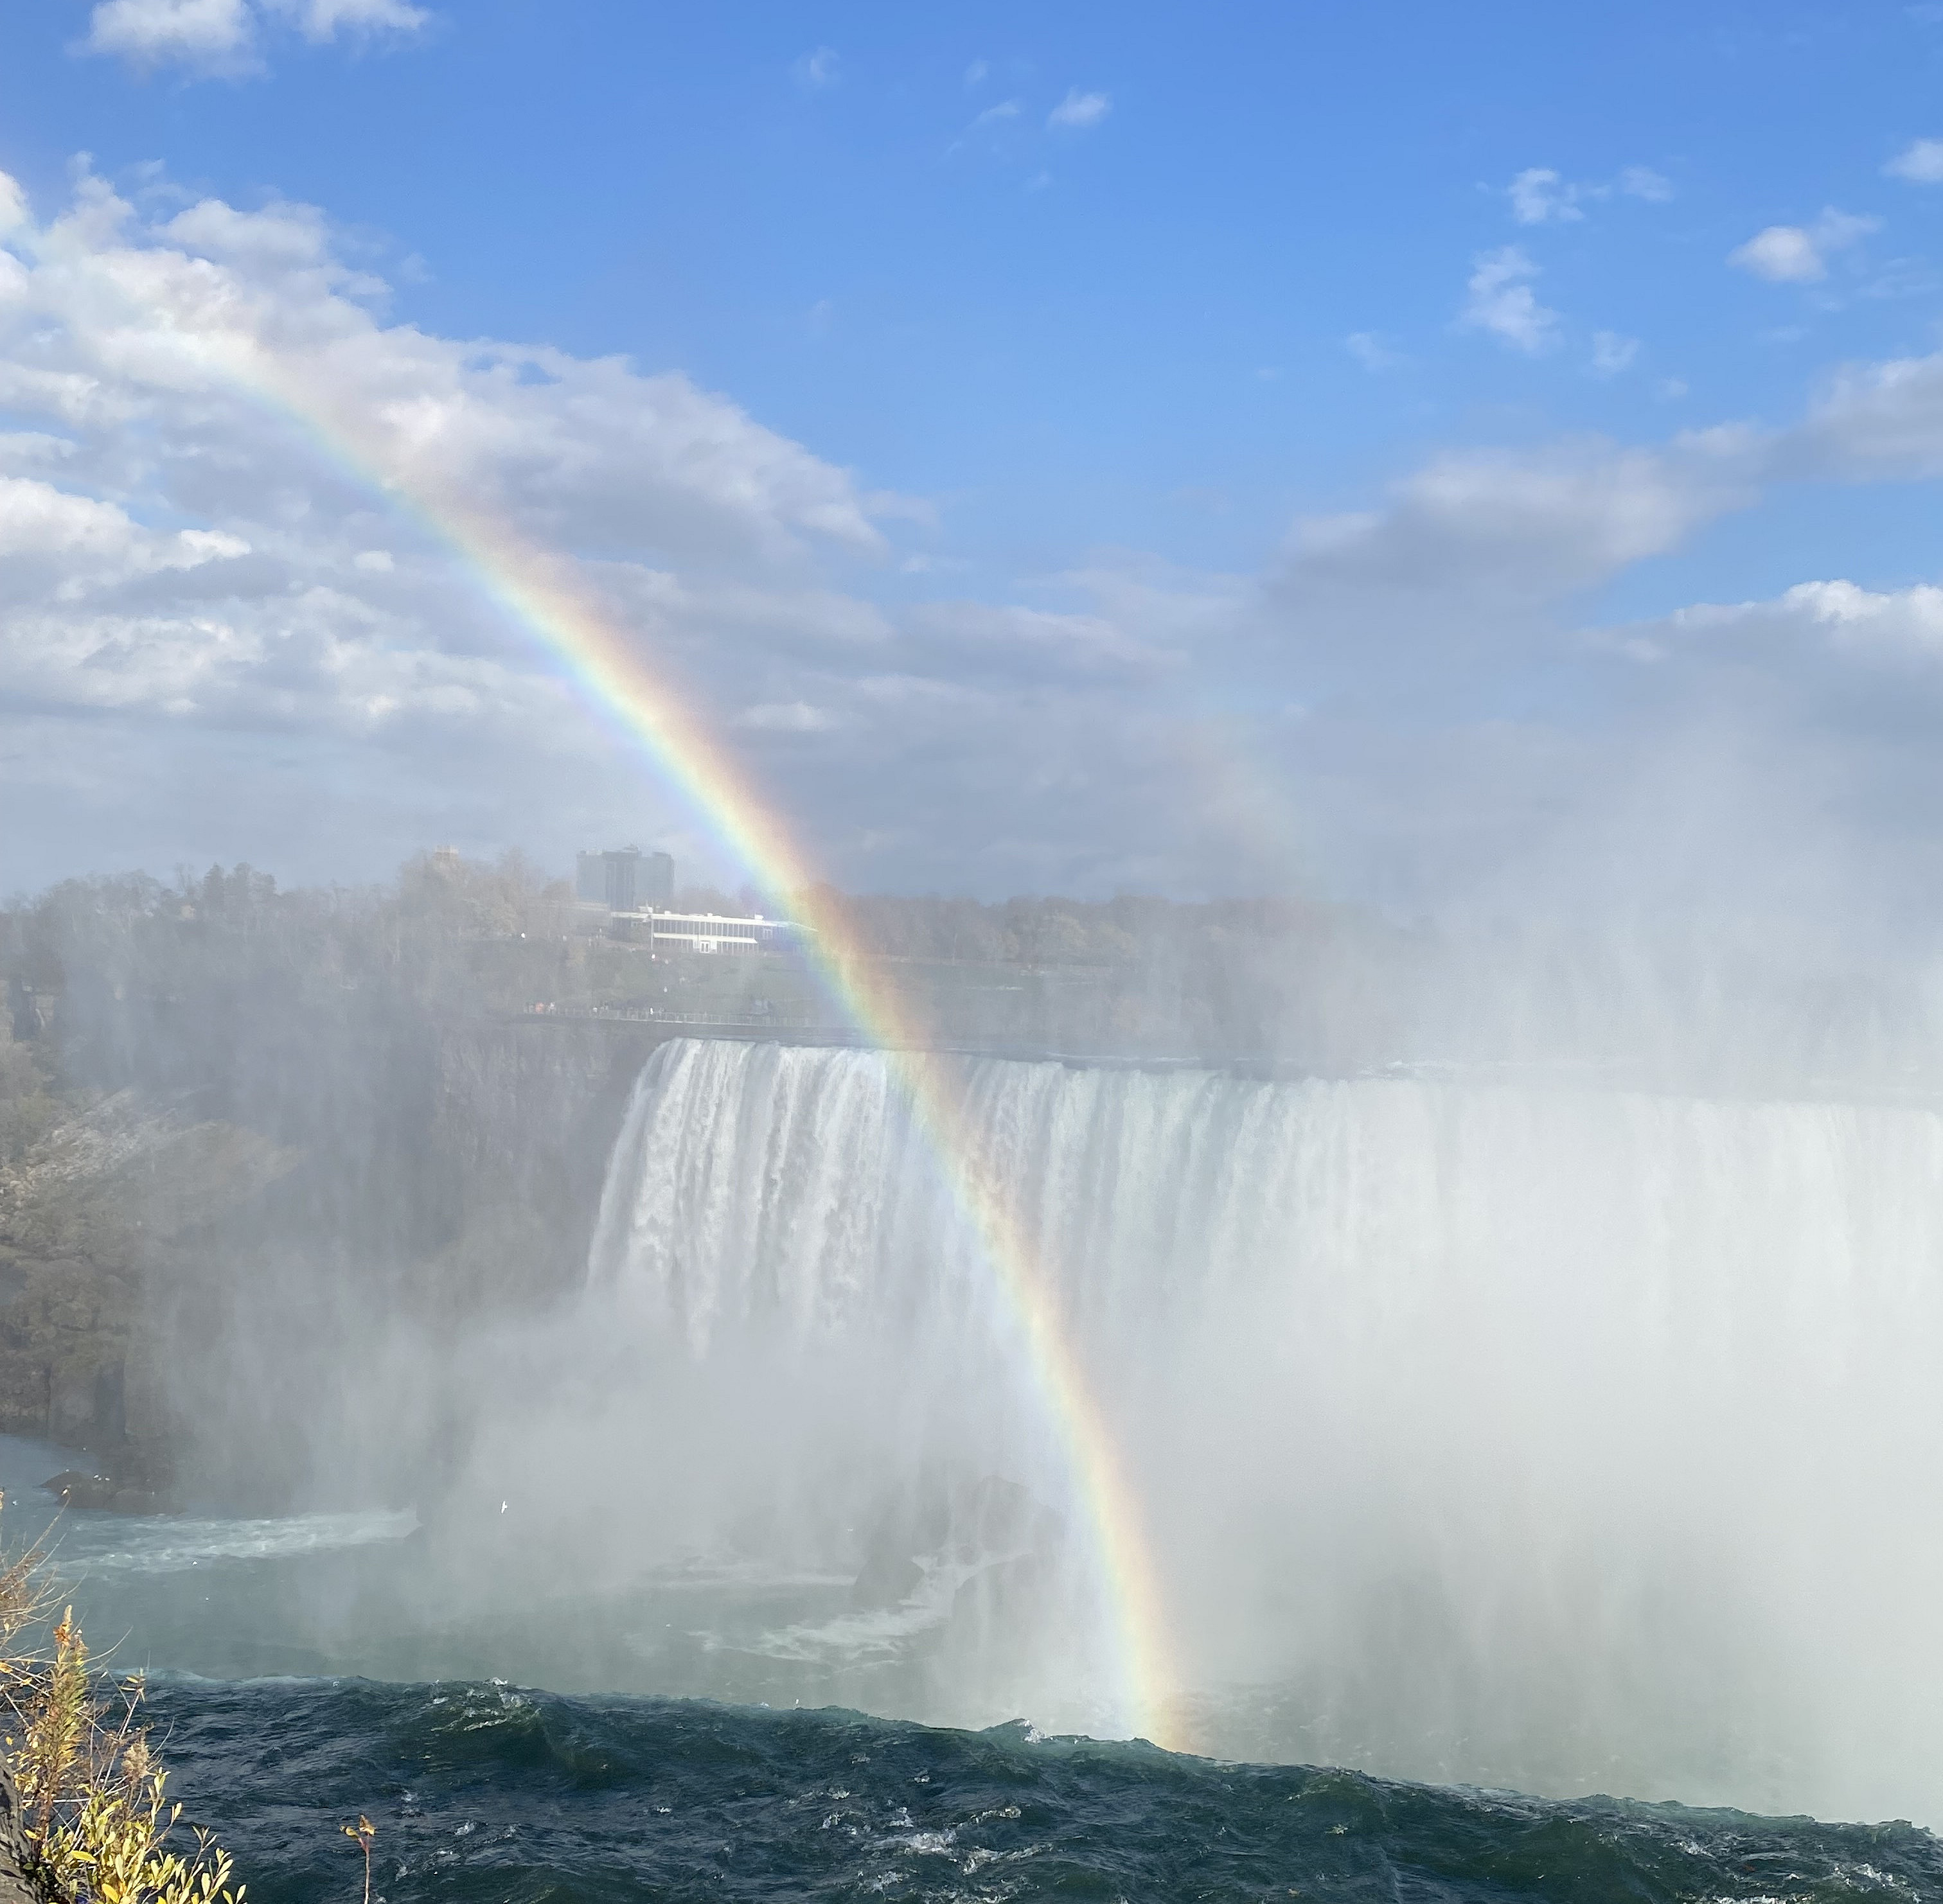 Wasserfall mit Regenbogen ©Steffen Schneider, persönlich